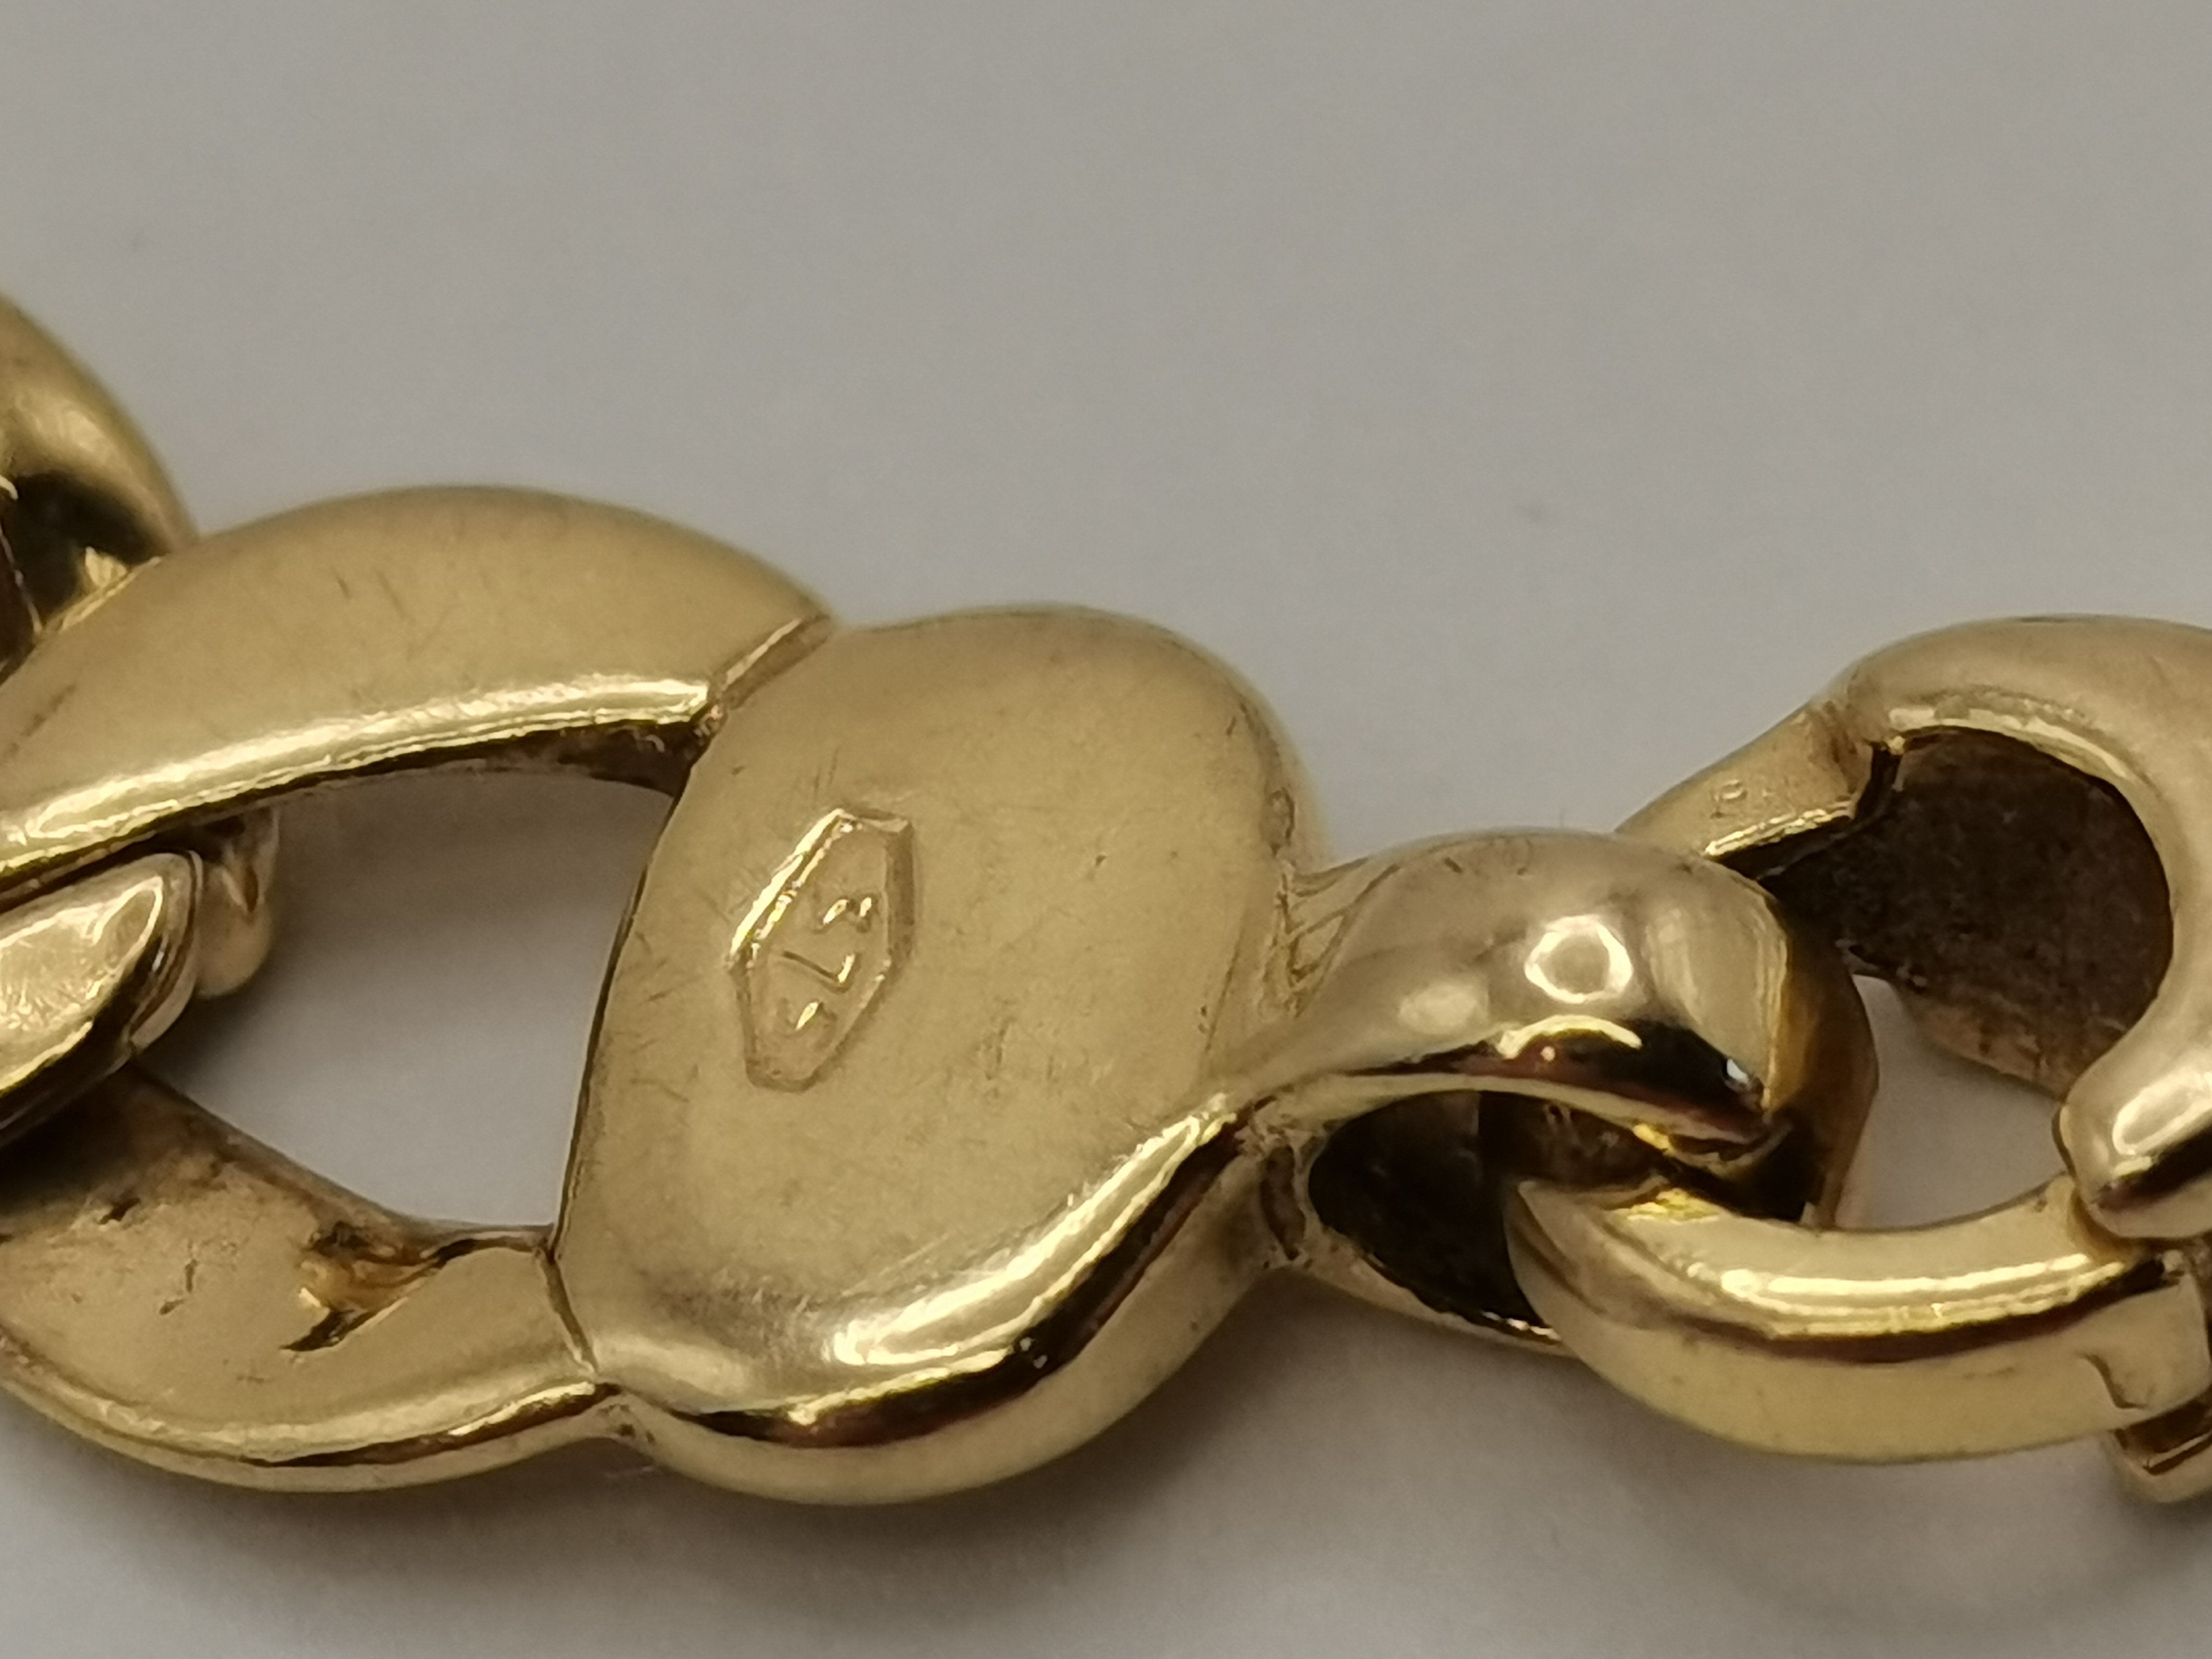 A 9 carat gold fancy link bracelet - Image 3 of 3